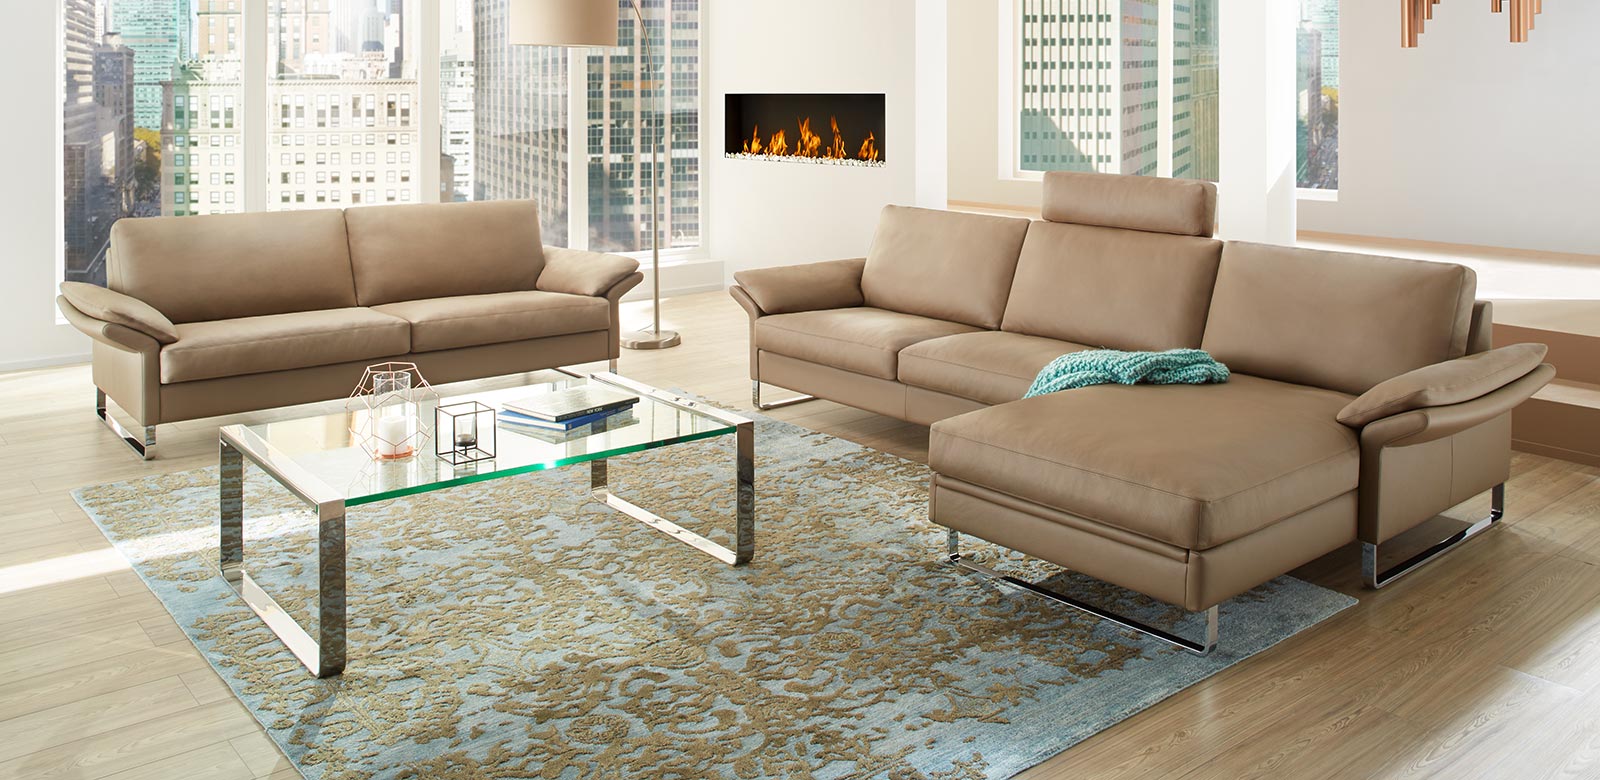 CL960 bank en fauteuil combinatie in crème leer, sierlijk tapijt en open haard in de woonkamer van een hoogbouw appartement